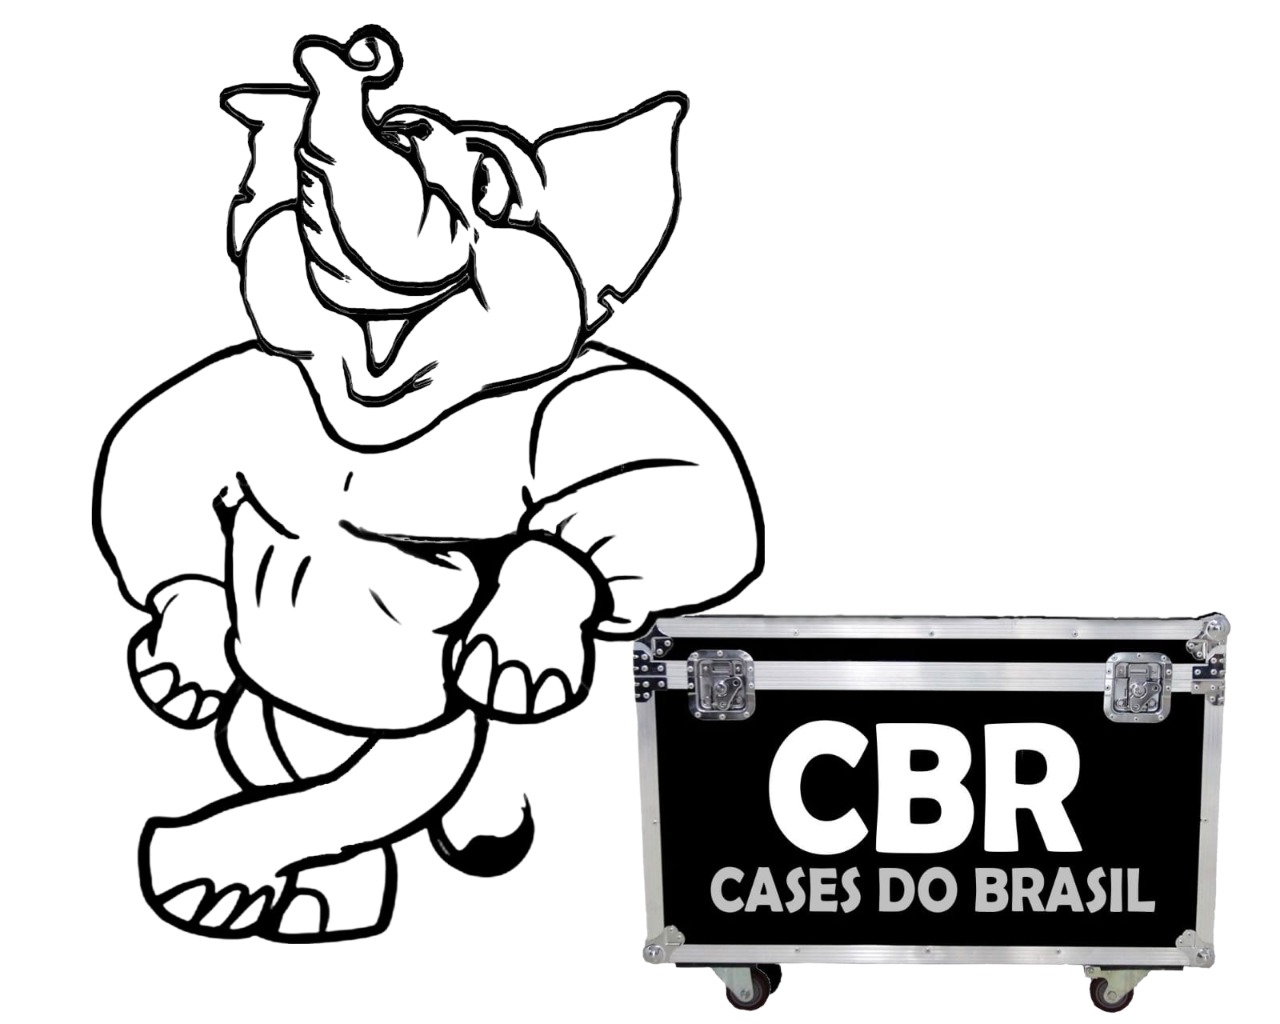 CBR Cases do Brasil